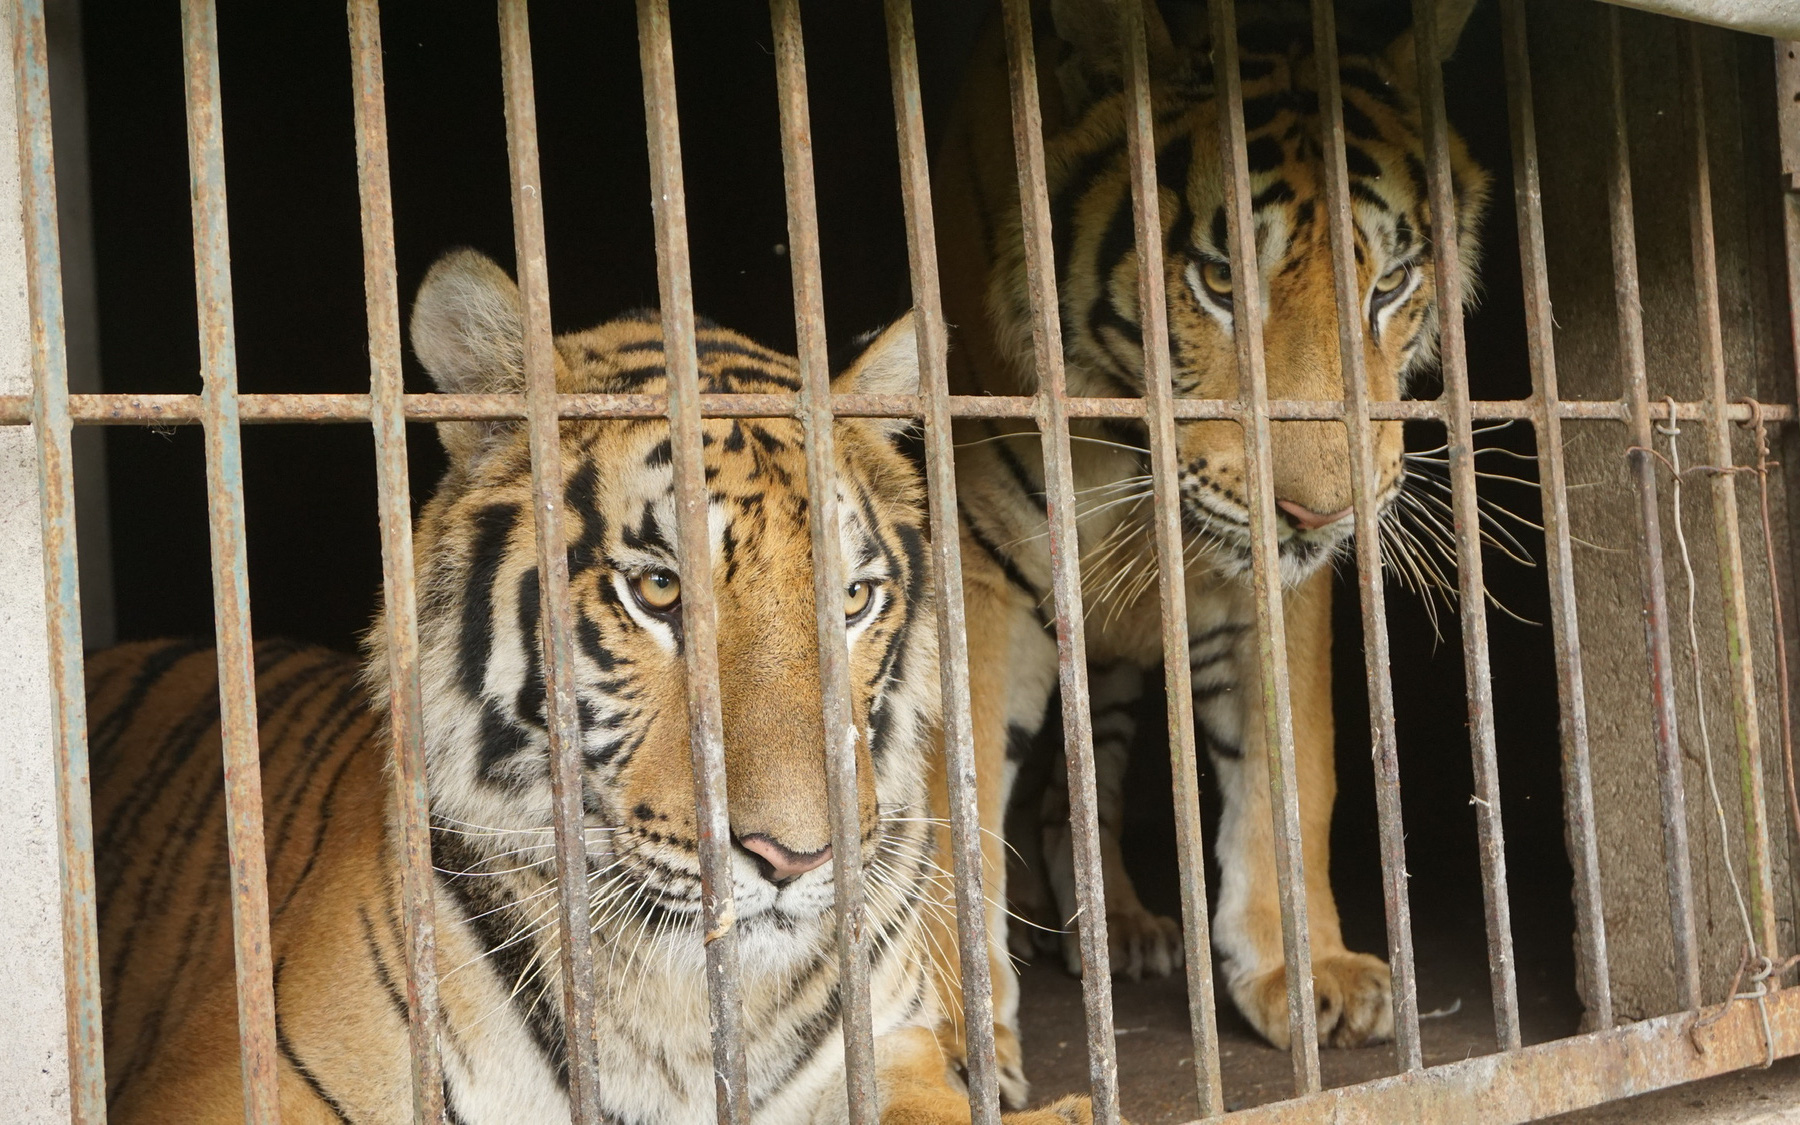 Kinh hoàng những chiêu trò tàn sát thú rừng: “Chuyên án” chưa từng có trong lịch sử bảo tồn ở Việt Nam